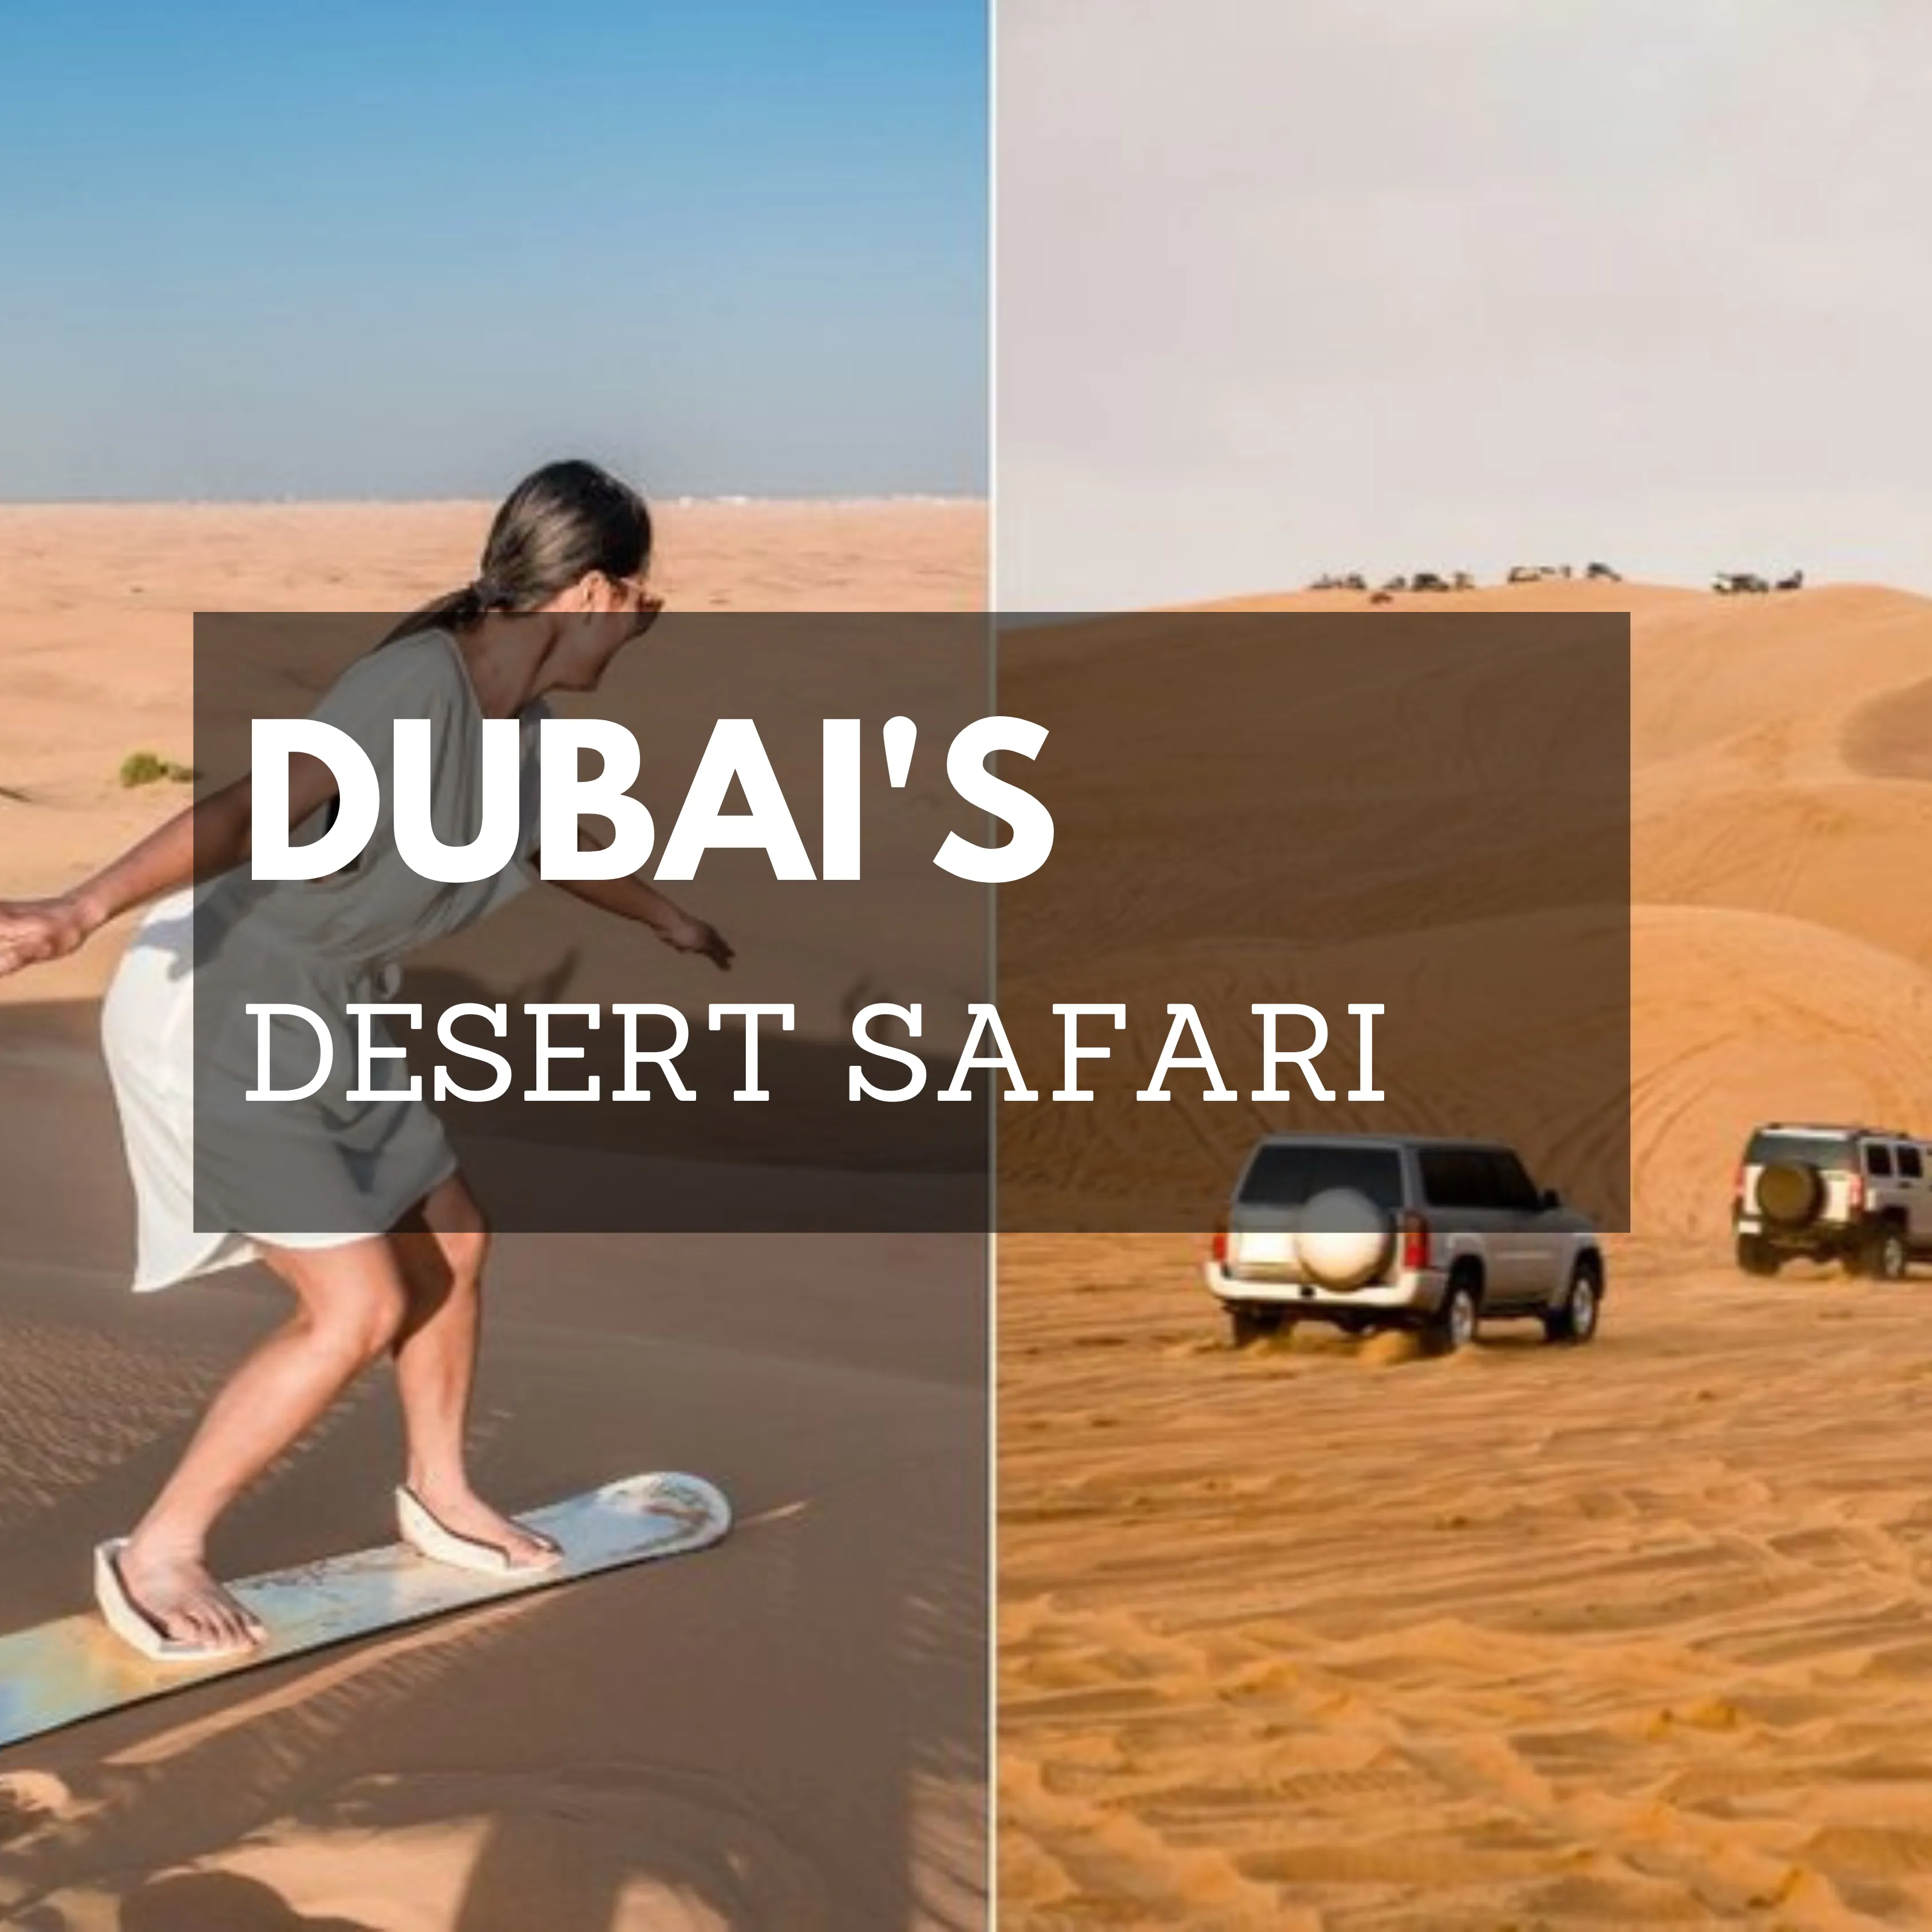 DUBAI DESERT SAFARI